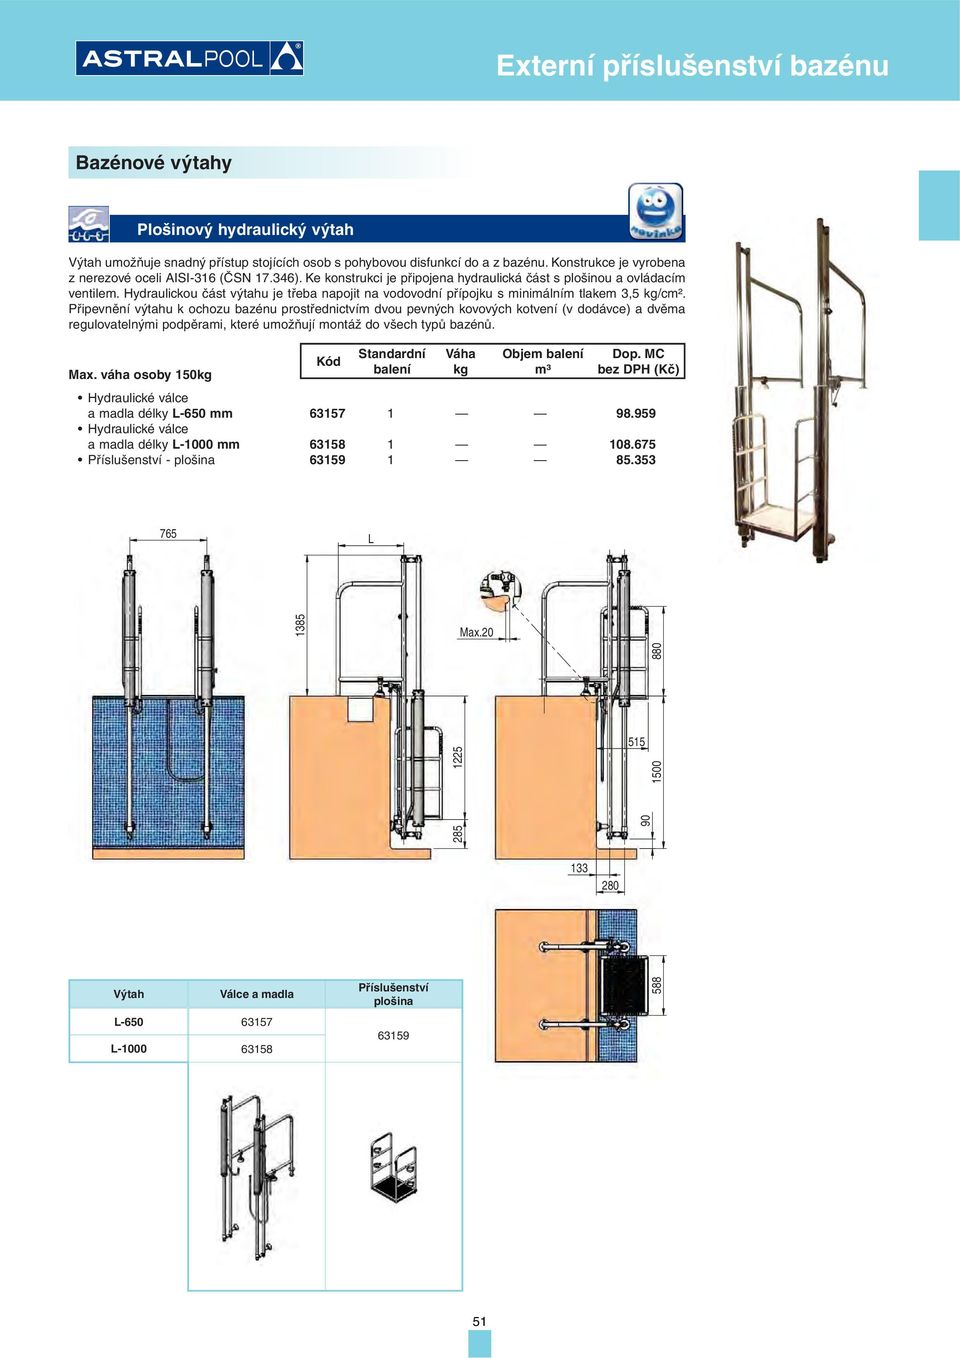 Připevnění výtahu k ochozu bazénu prostřednictvím dvou pevných kovových kotvení (v dodávce) a dvěma regulovatelnými podpěrami, které umožňují montáž do všech typů bazénů. Max.